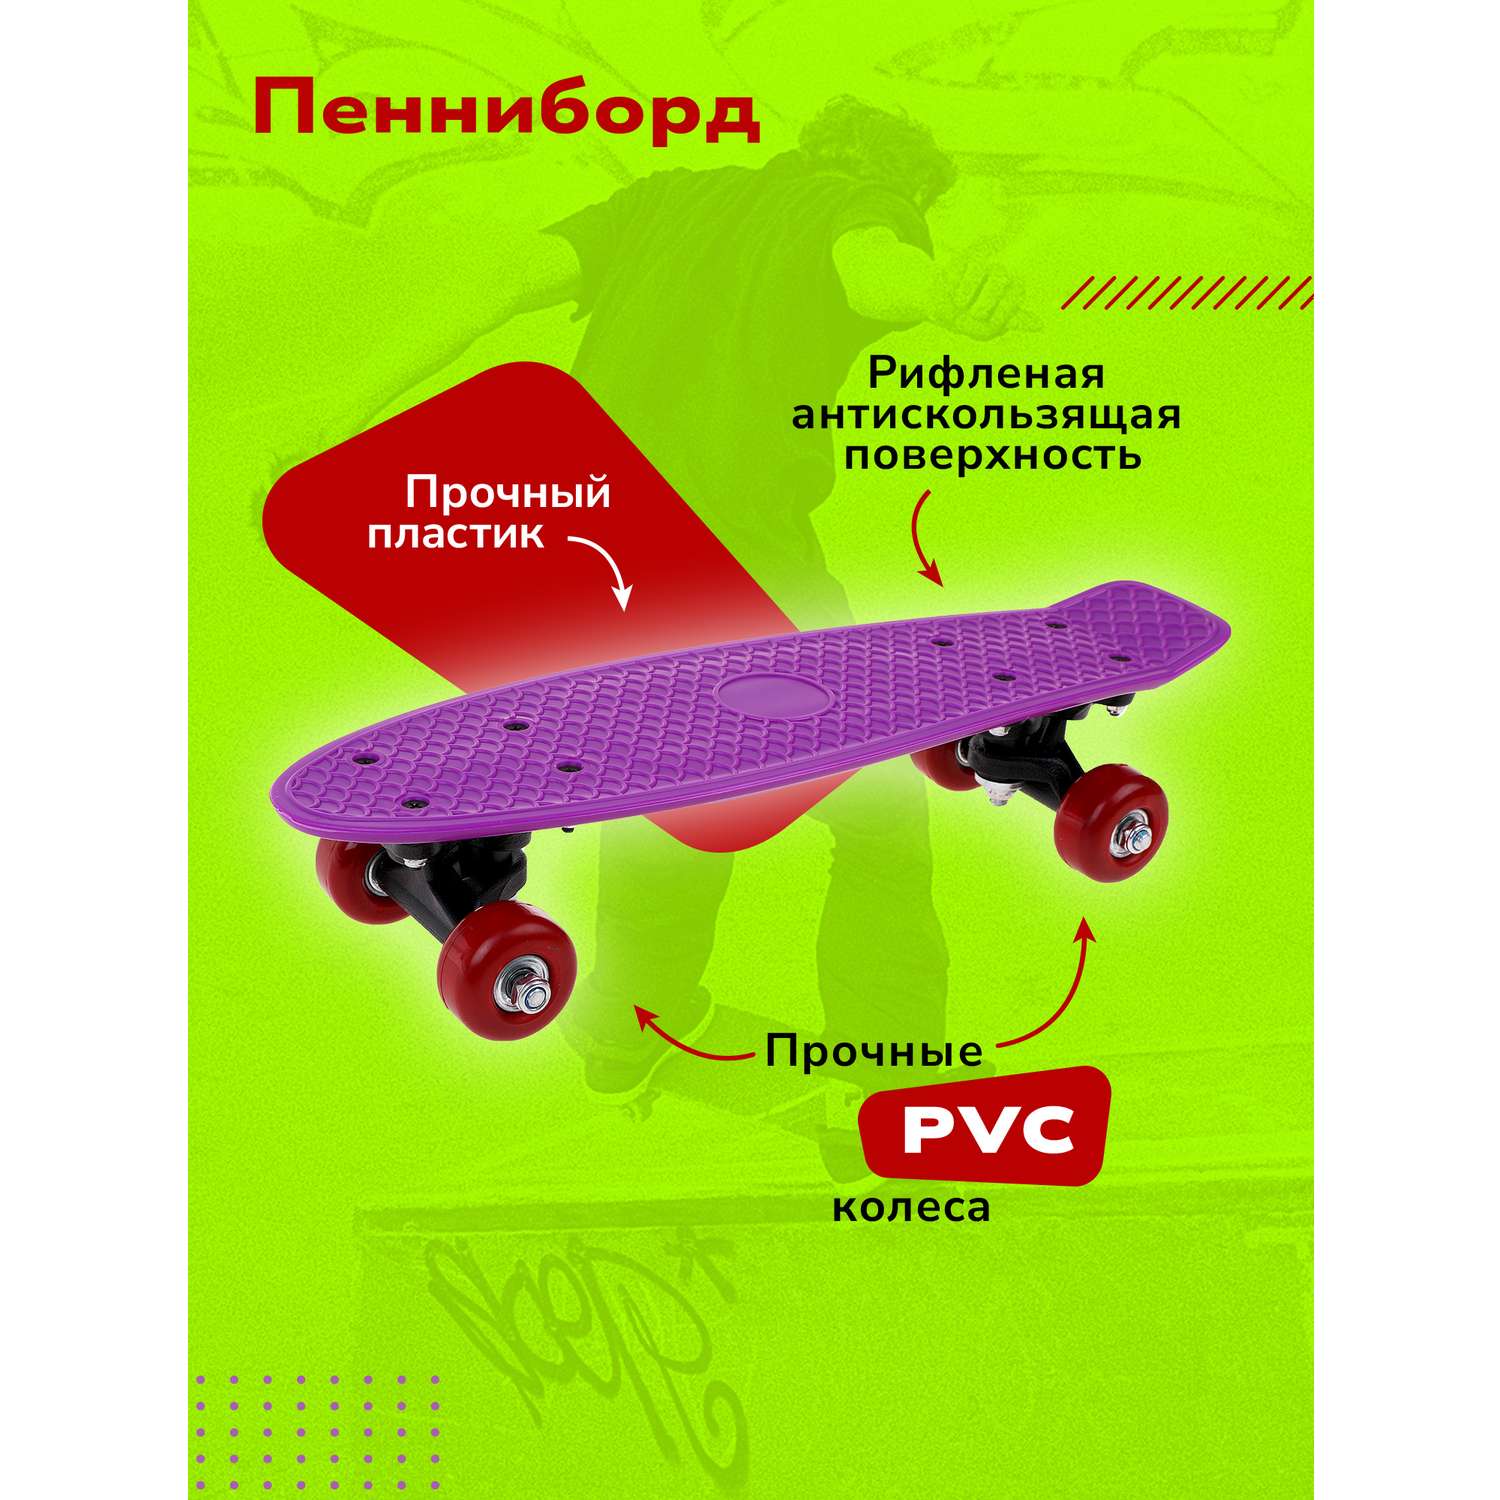 Скейтборд Наша Игрушка пенниборд 41х12 см колеса PVC крепления пластик фиолетовый - фото 1